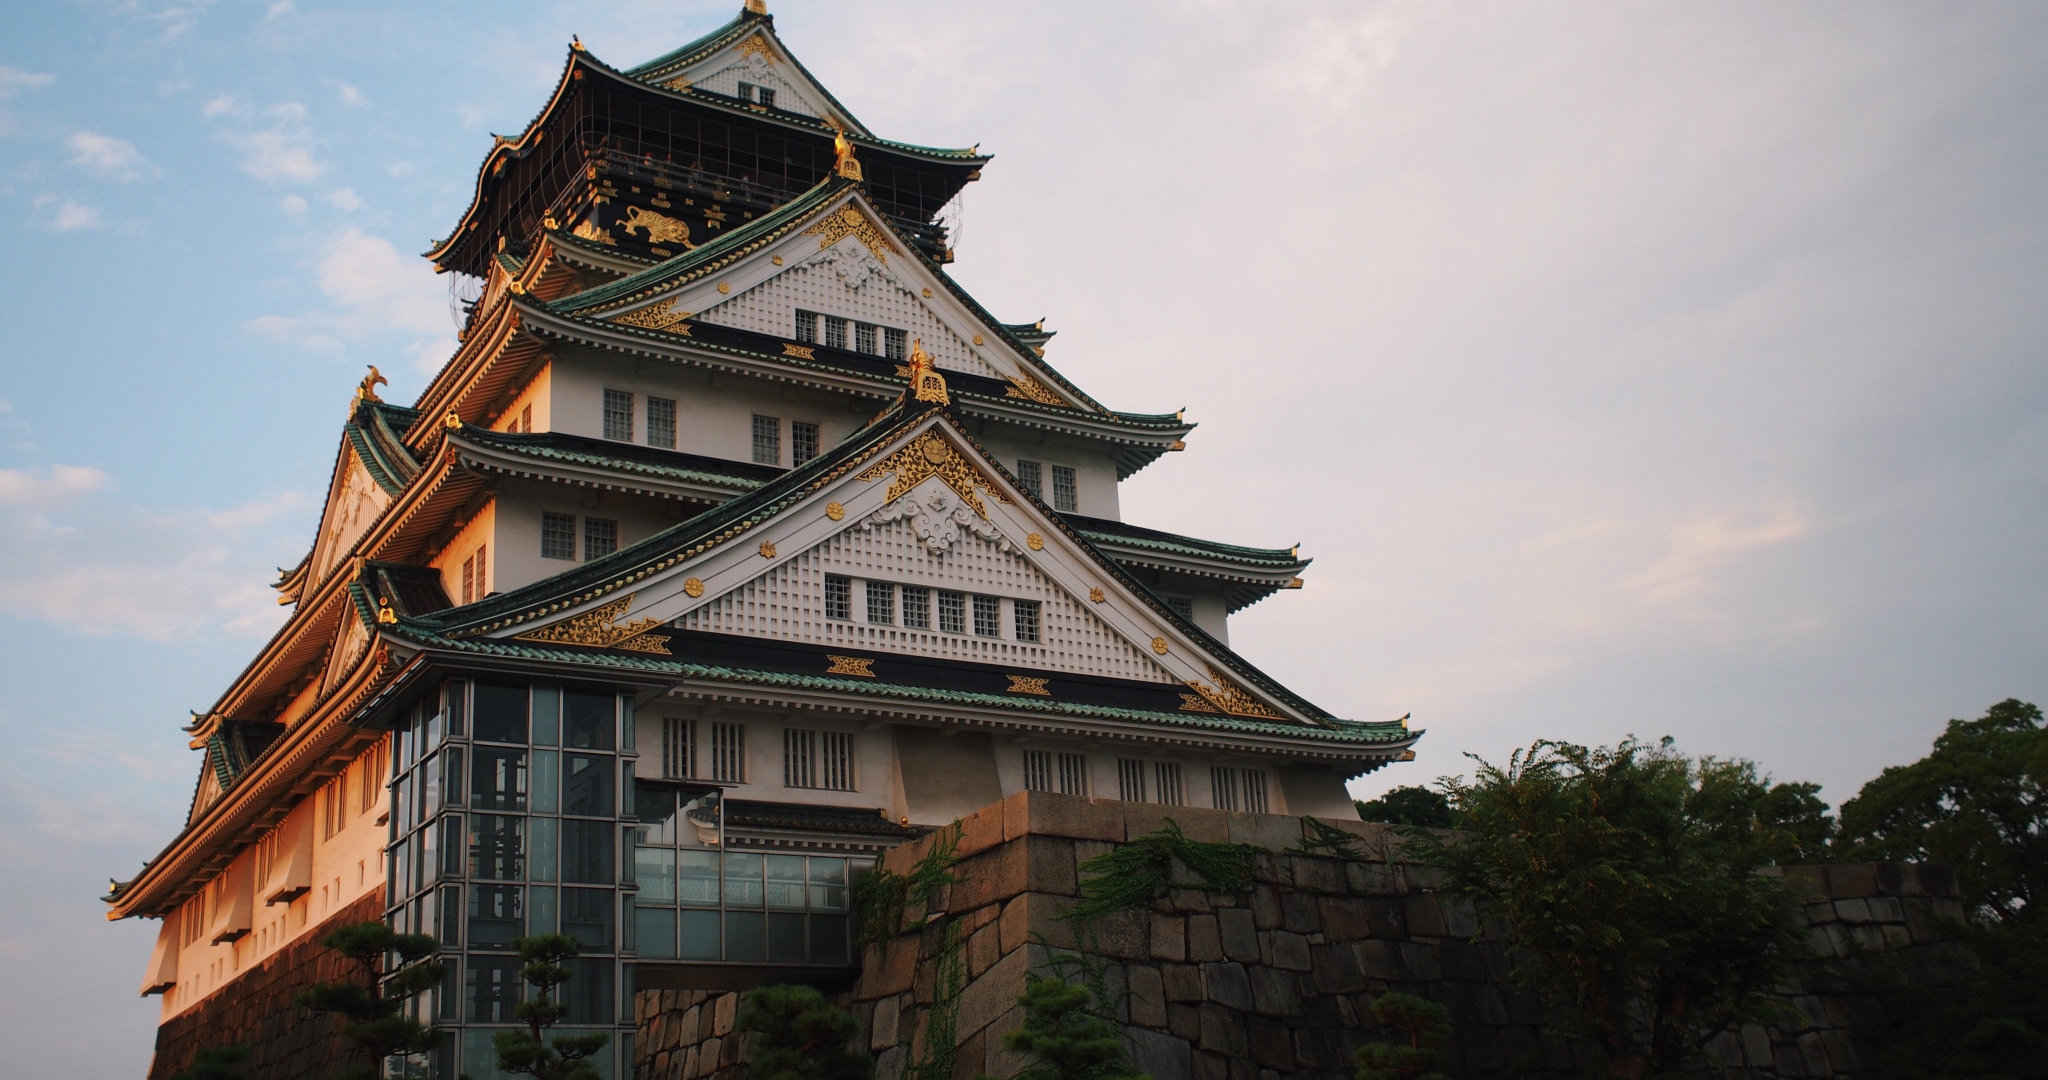 镀金瓦片的日式经典旅游景点特色建筑桌面壁纸